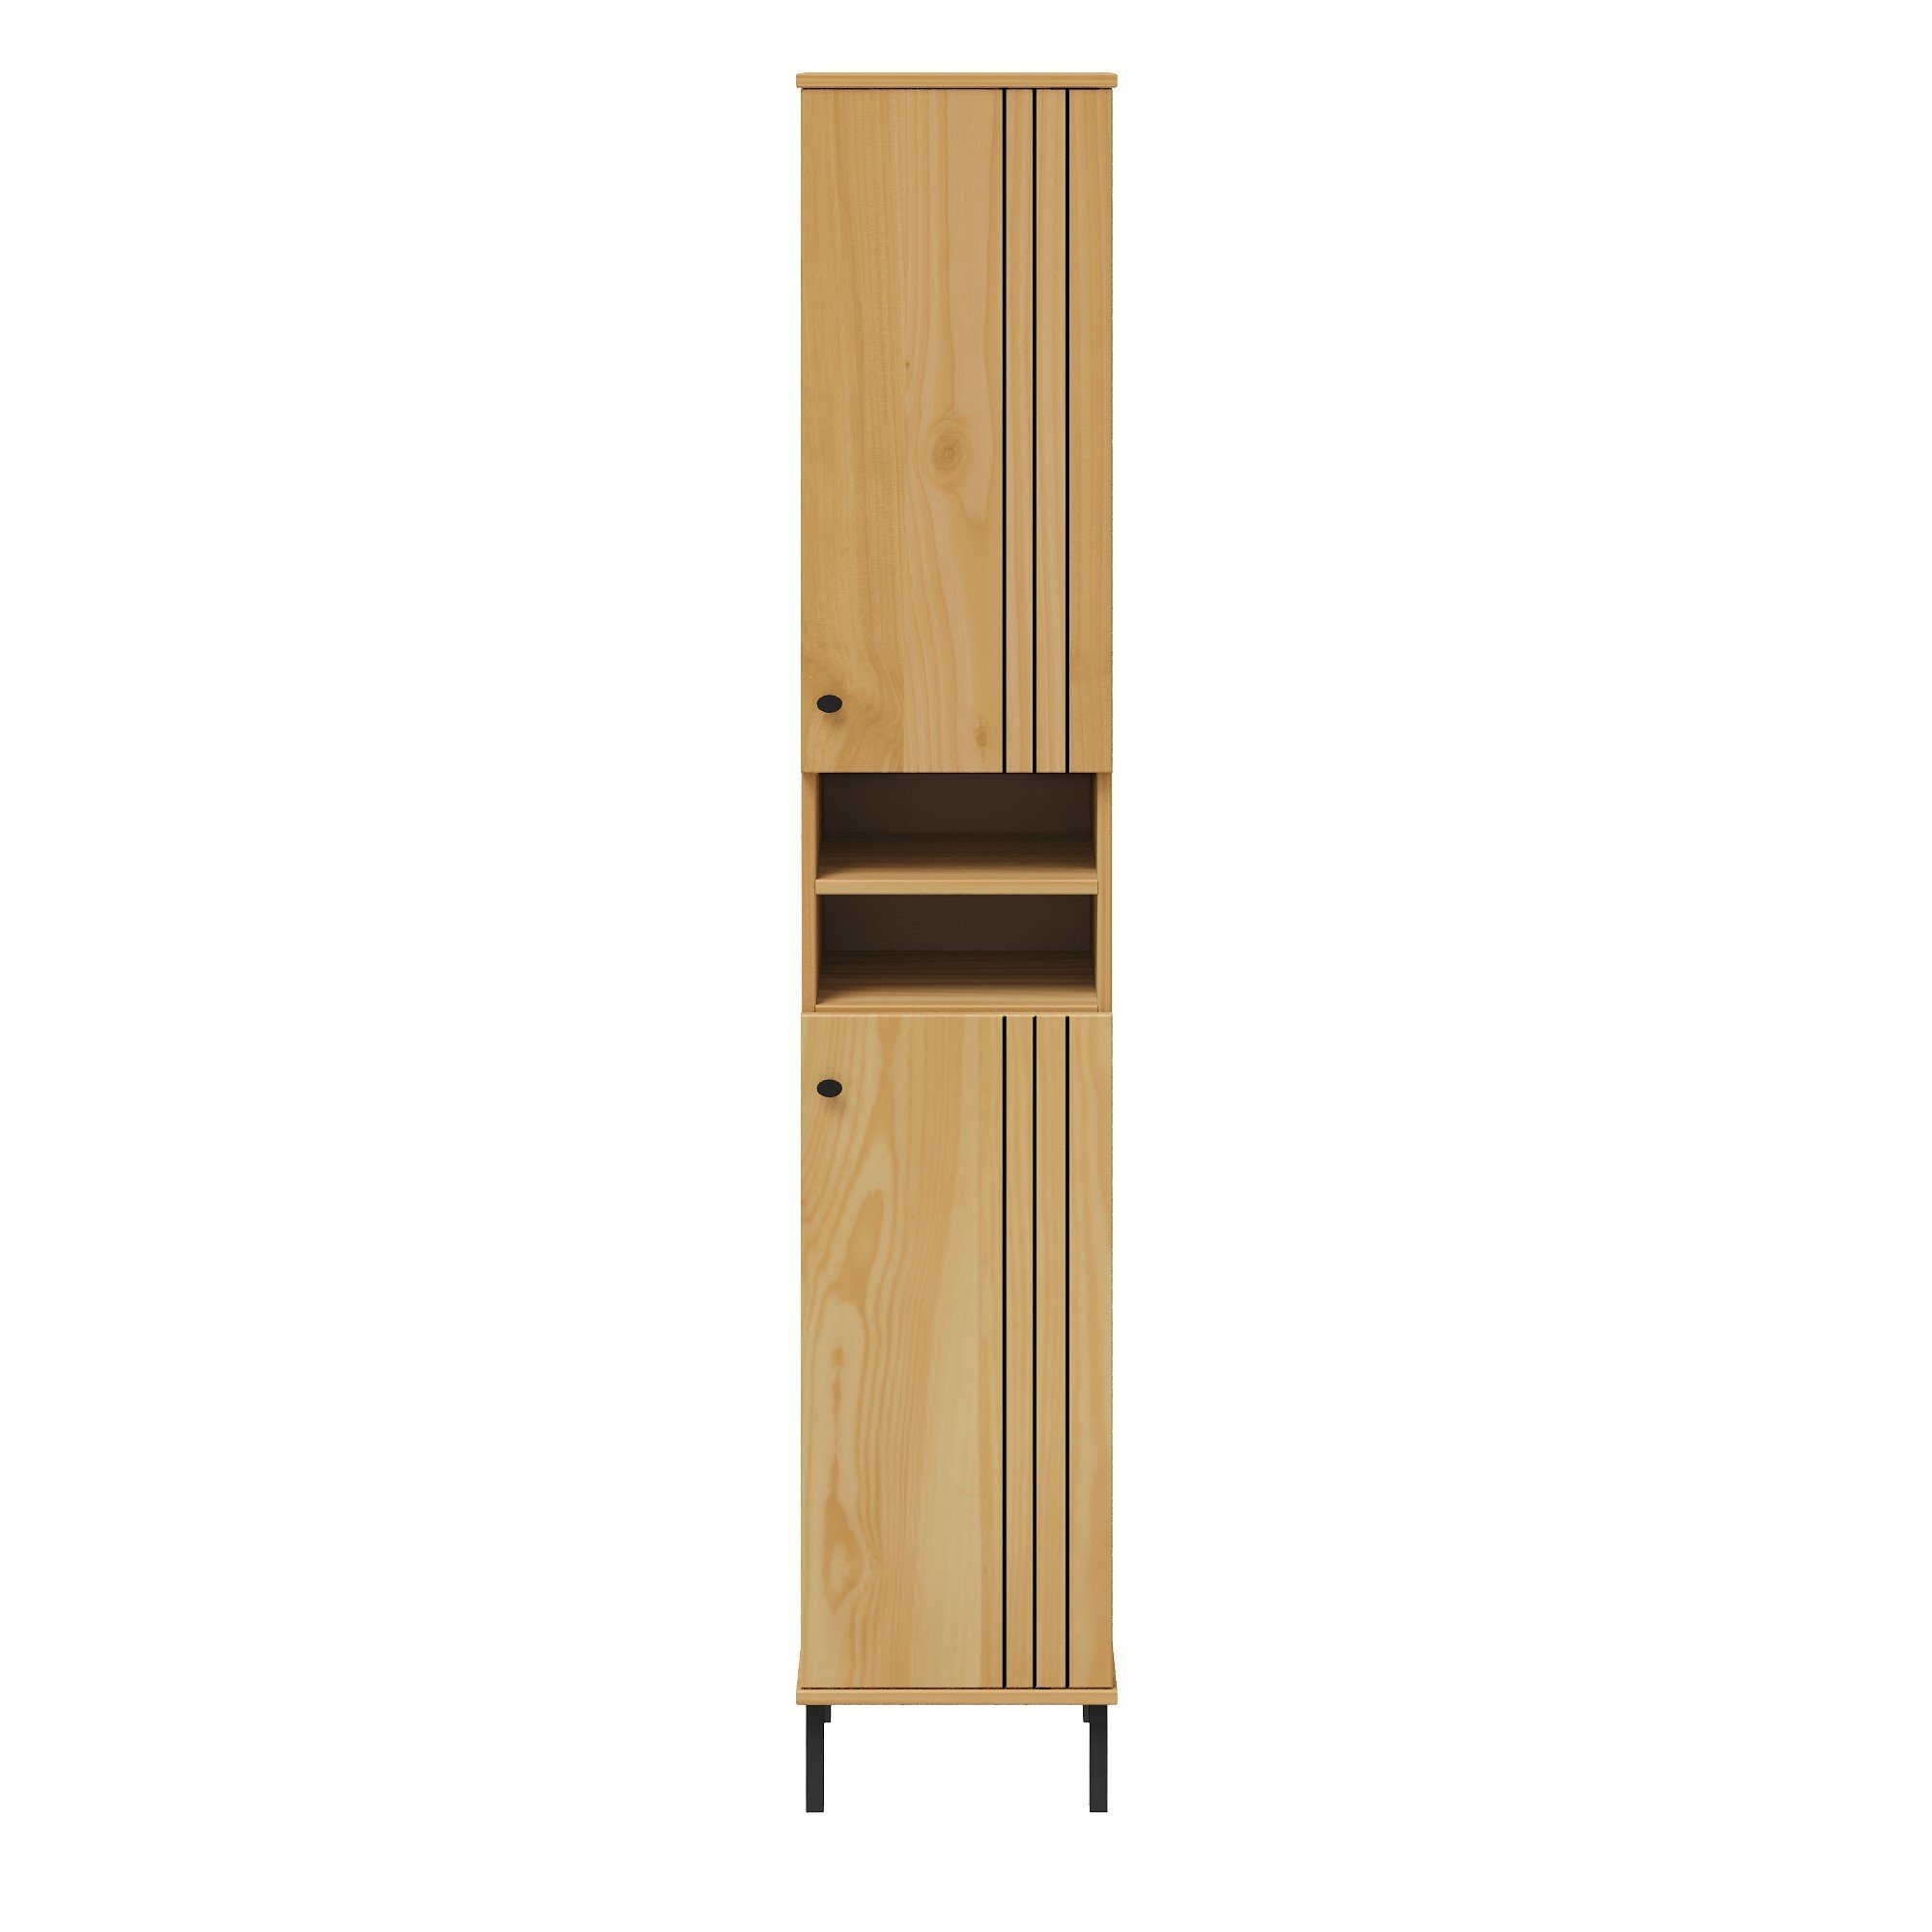 Woodroom Regal Sevilla, Kiefer massiv eichefarbig lackiert, BxHxT 35x190x32 cm